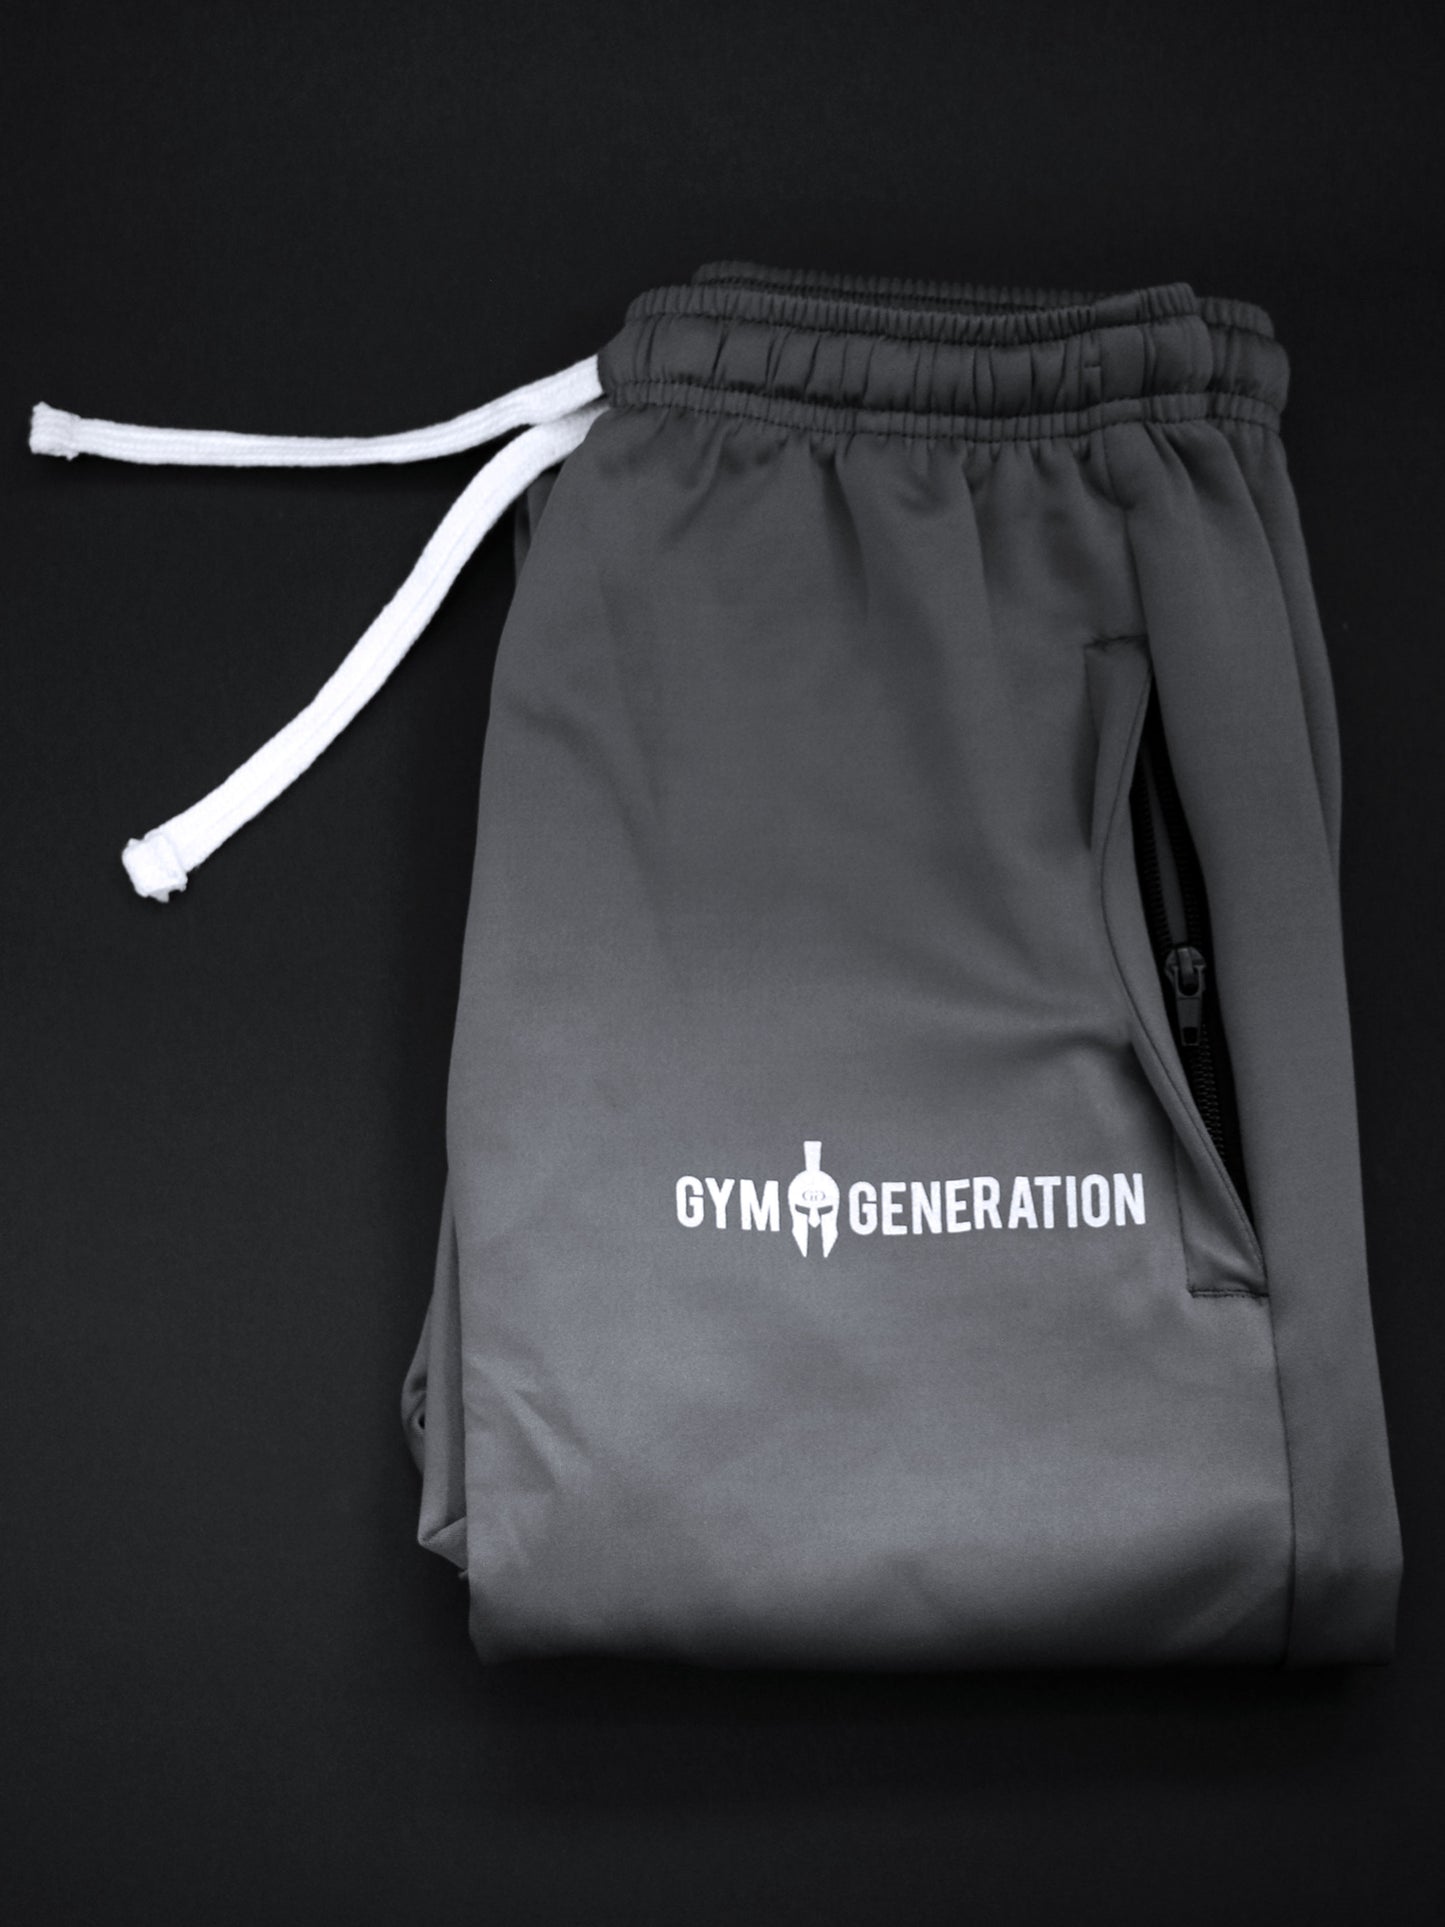 Gym Generation Trainer Pants in Grau, die ultimativen Komfort und Stil für jedes Workout bieten.